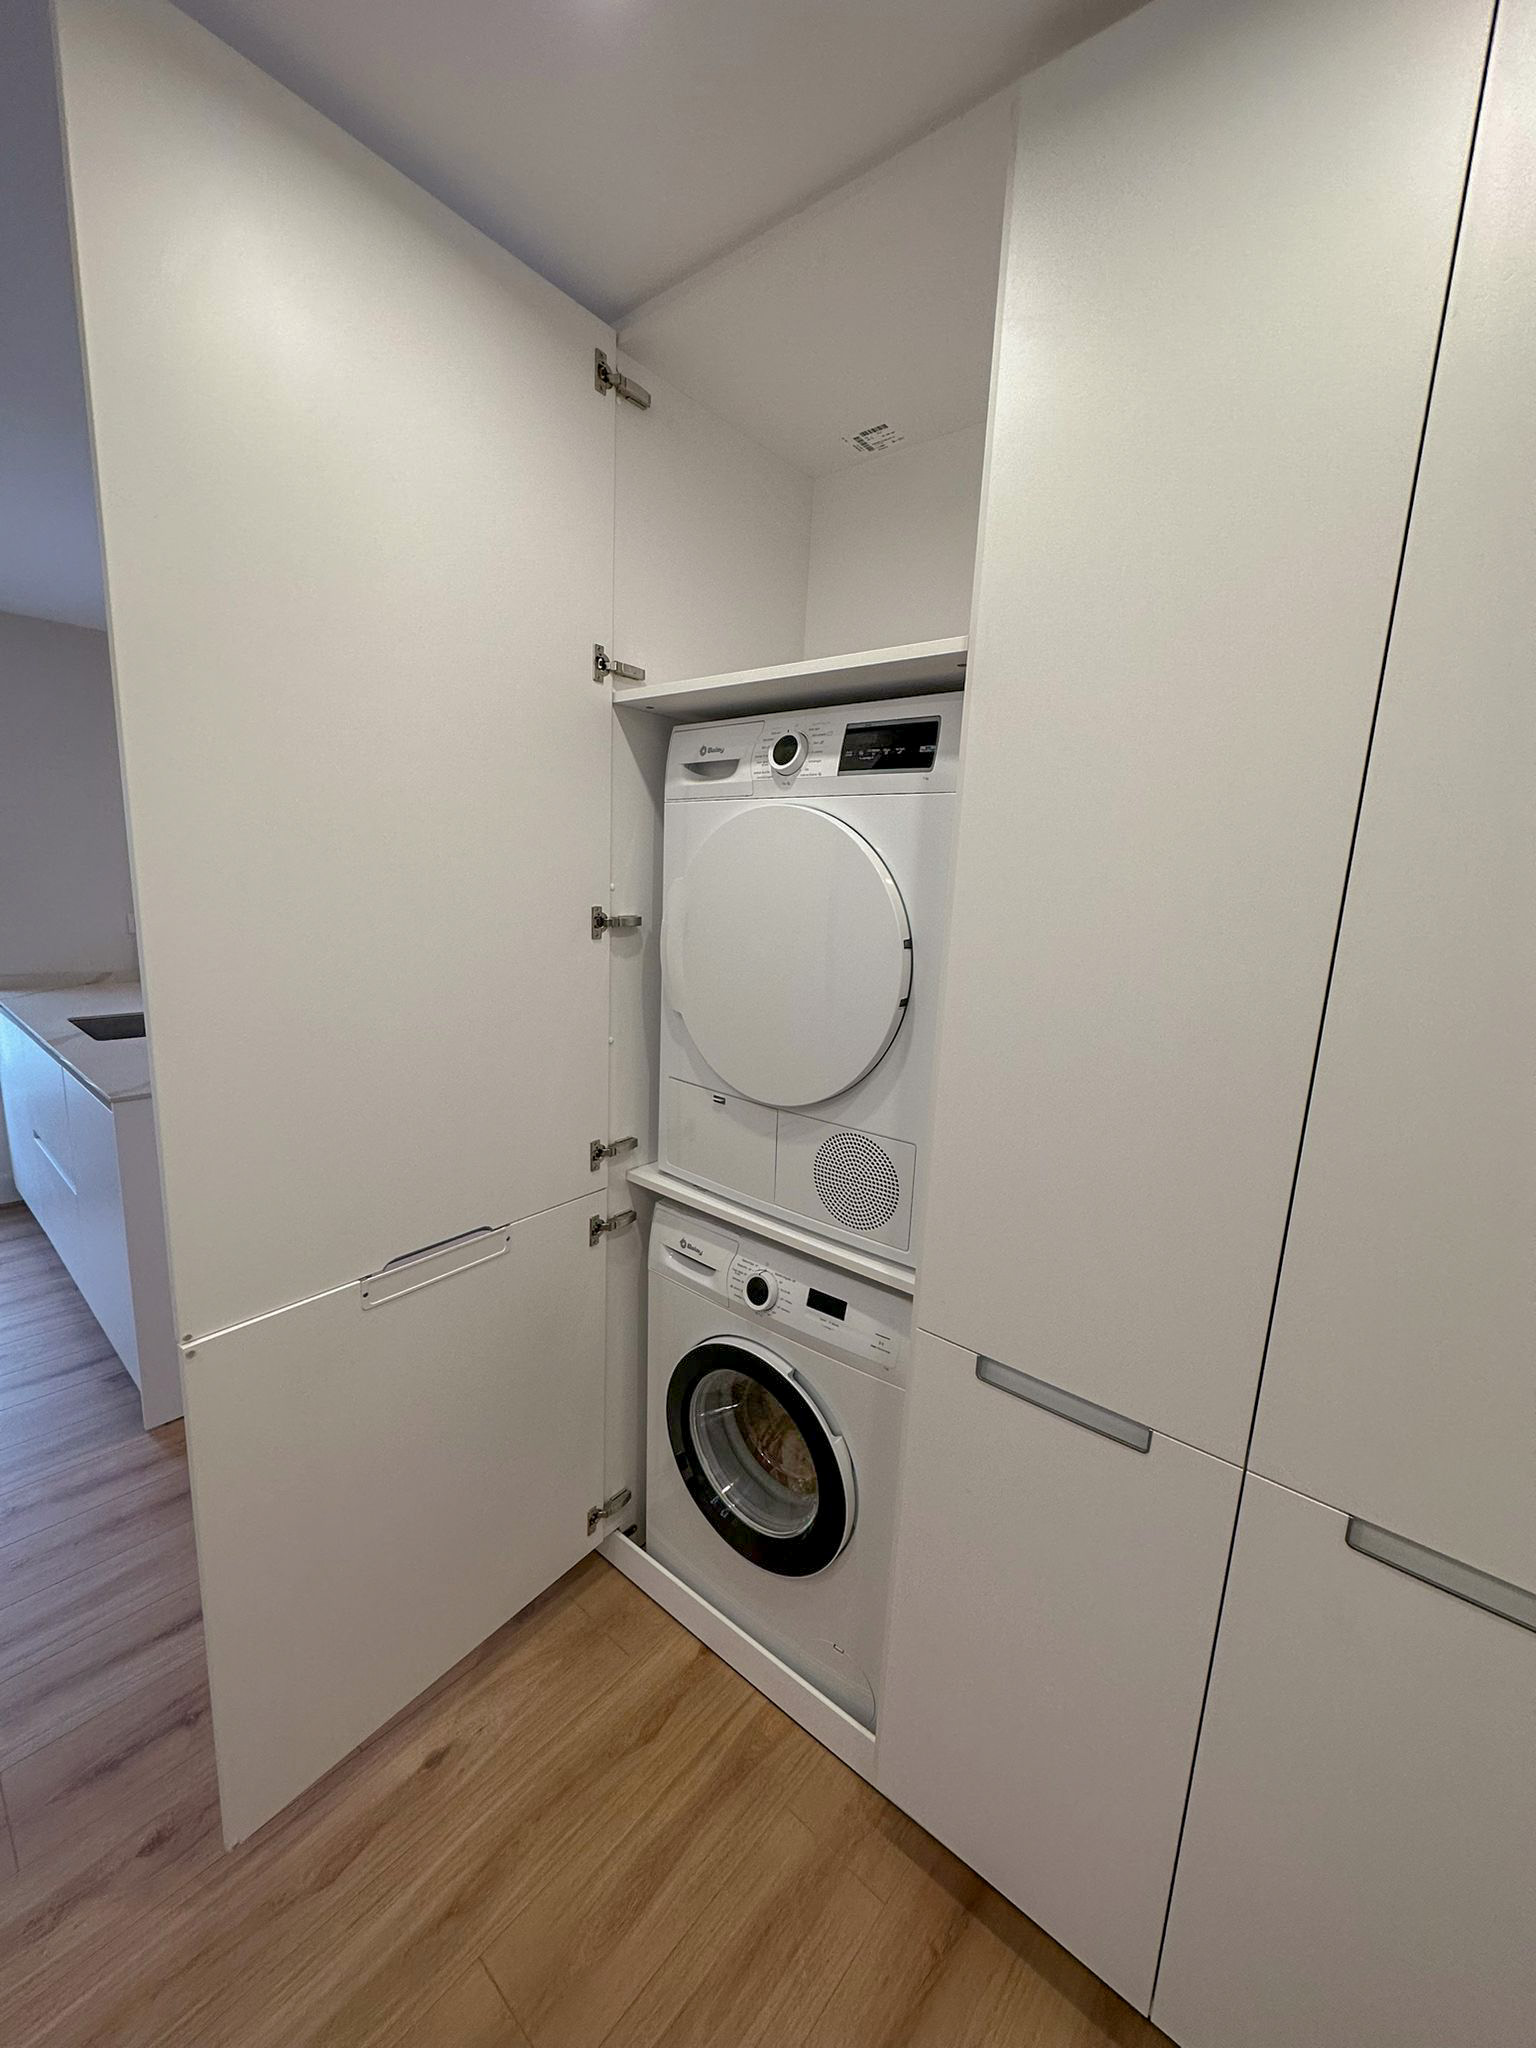 Zona de lavado, lavadora y secadora dentro del armario.